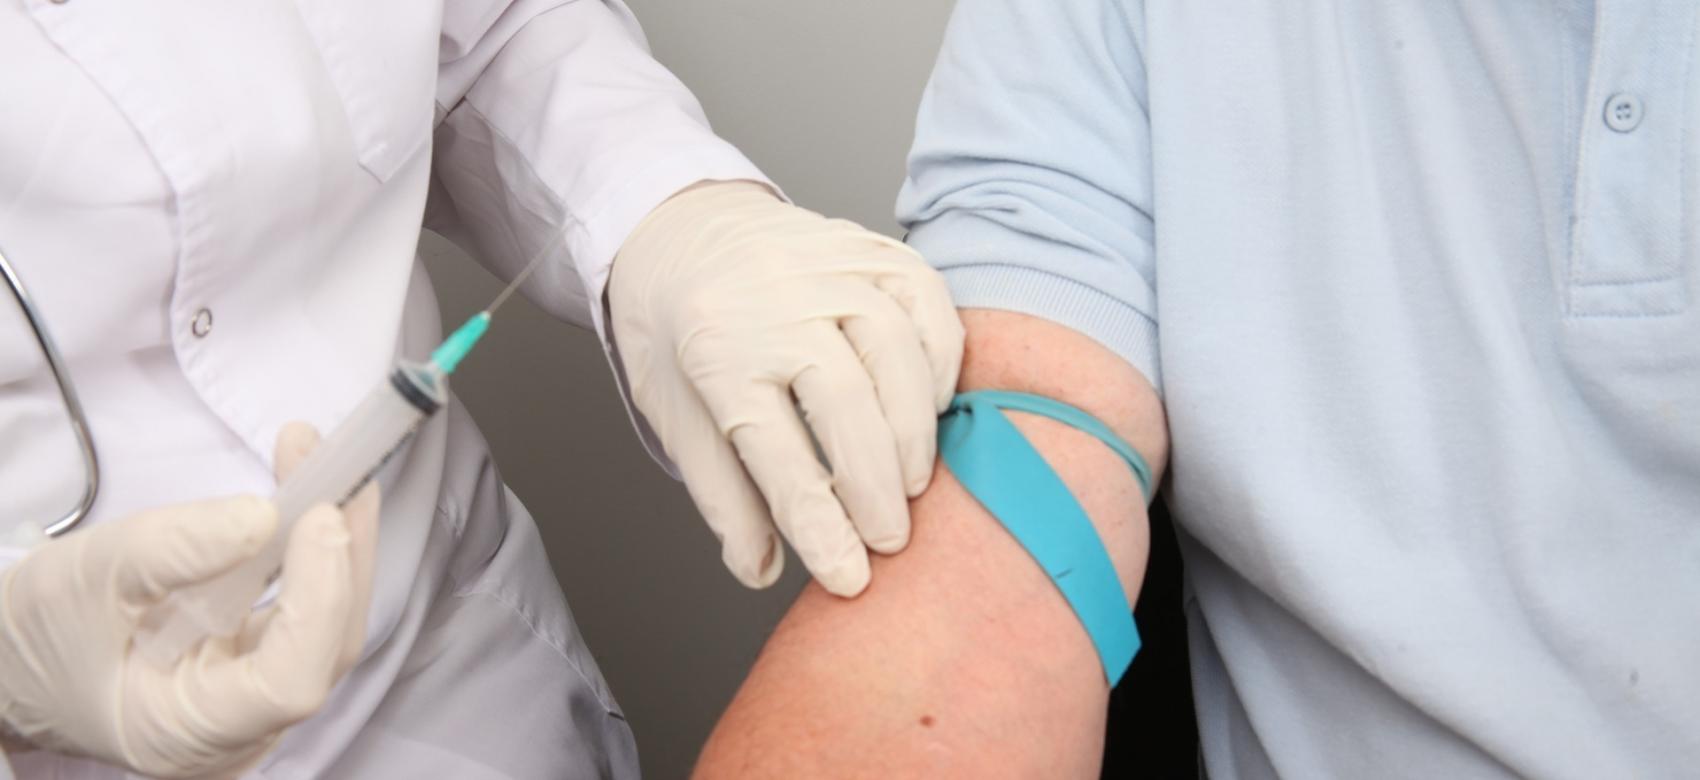 Imagen de un médico con una jeringuilla en la mano preparado para sacar sangre